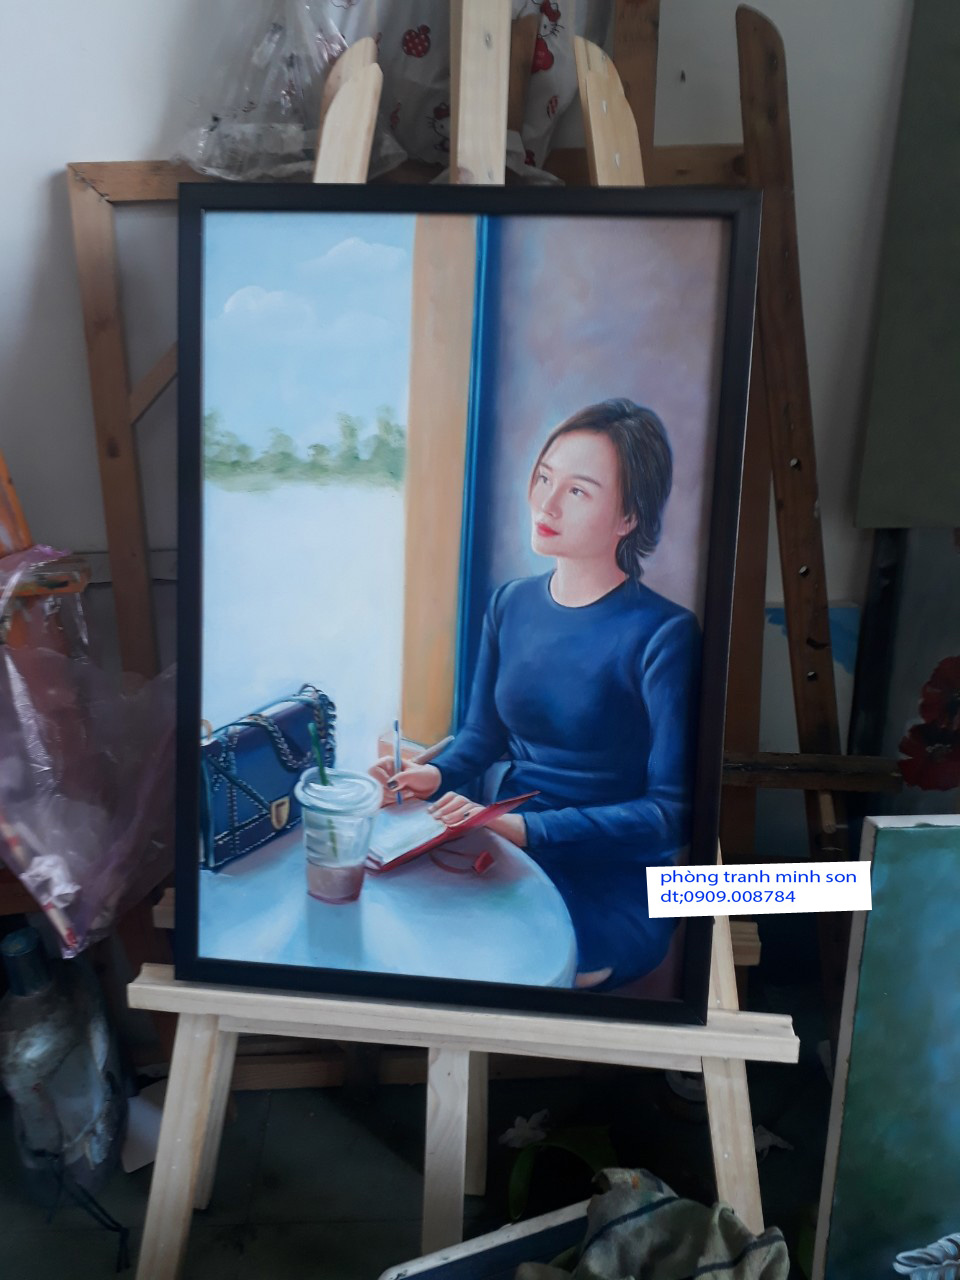 Loạt tranh sơn dầu hút hồn của họa sĩ vẽ chân dung HLV Park Hangseo